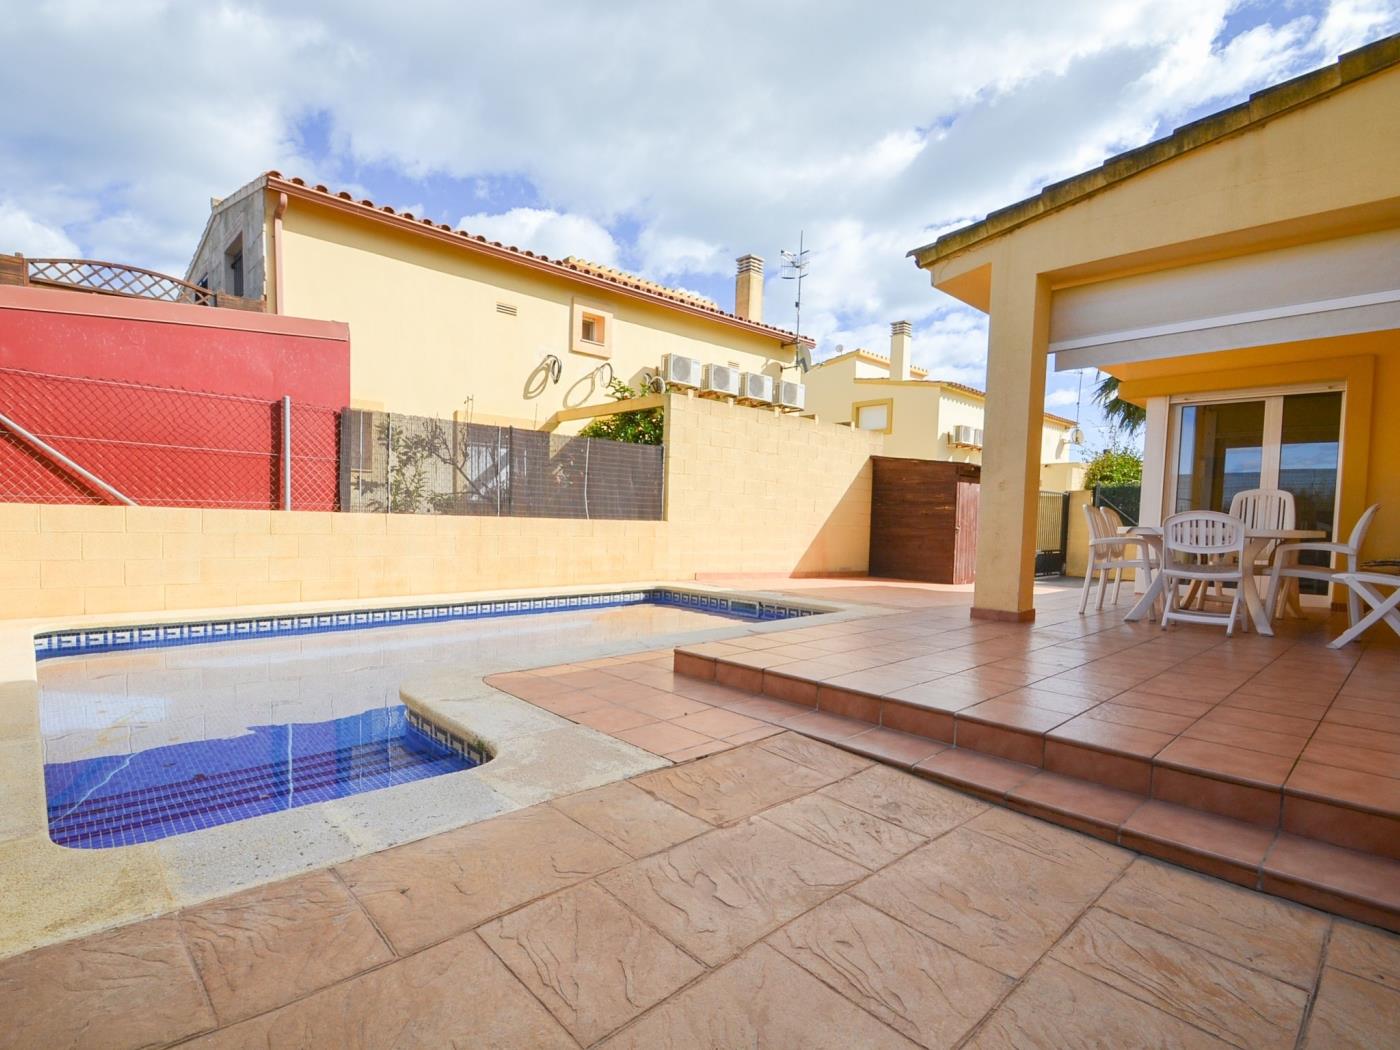 Casa Blaumar para 8-10 personas con piscina privada en Riumar Deltebre